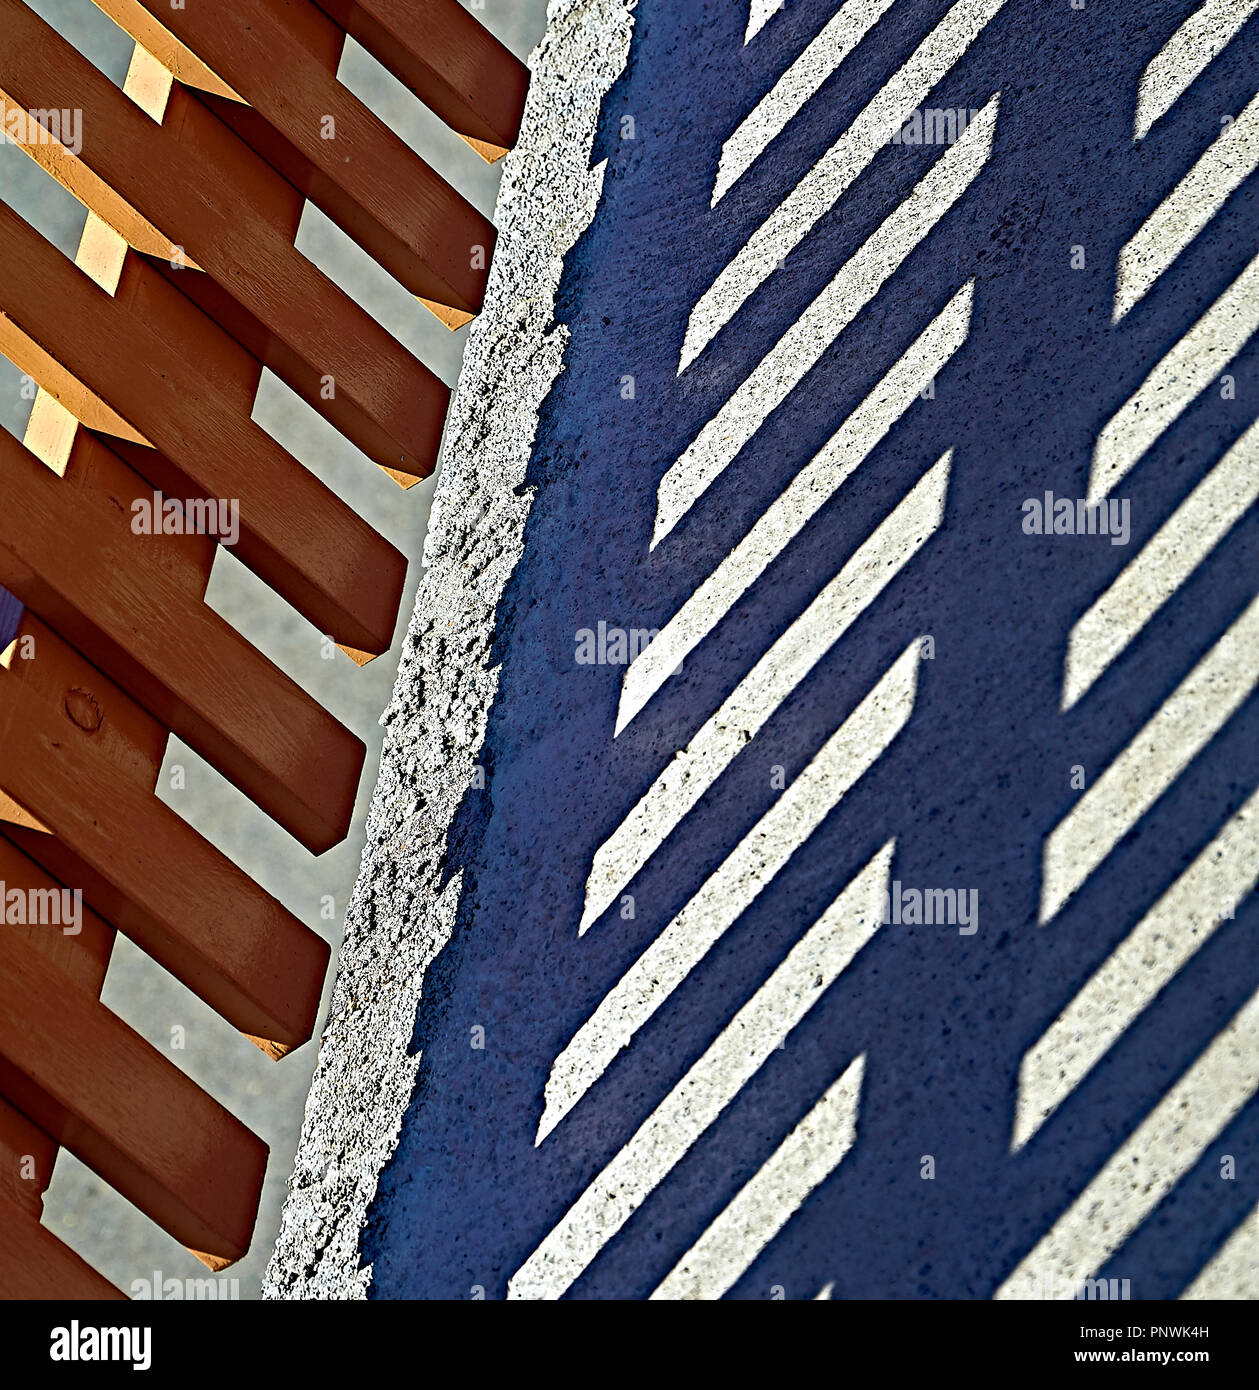 Abstraite de l'ombre projetée par une clôture en bois sur une surface en béton Banque D'Images